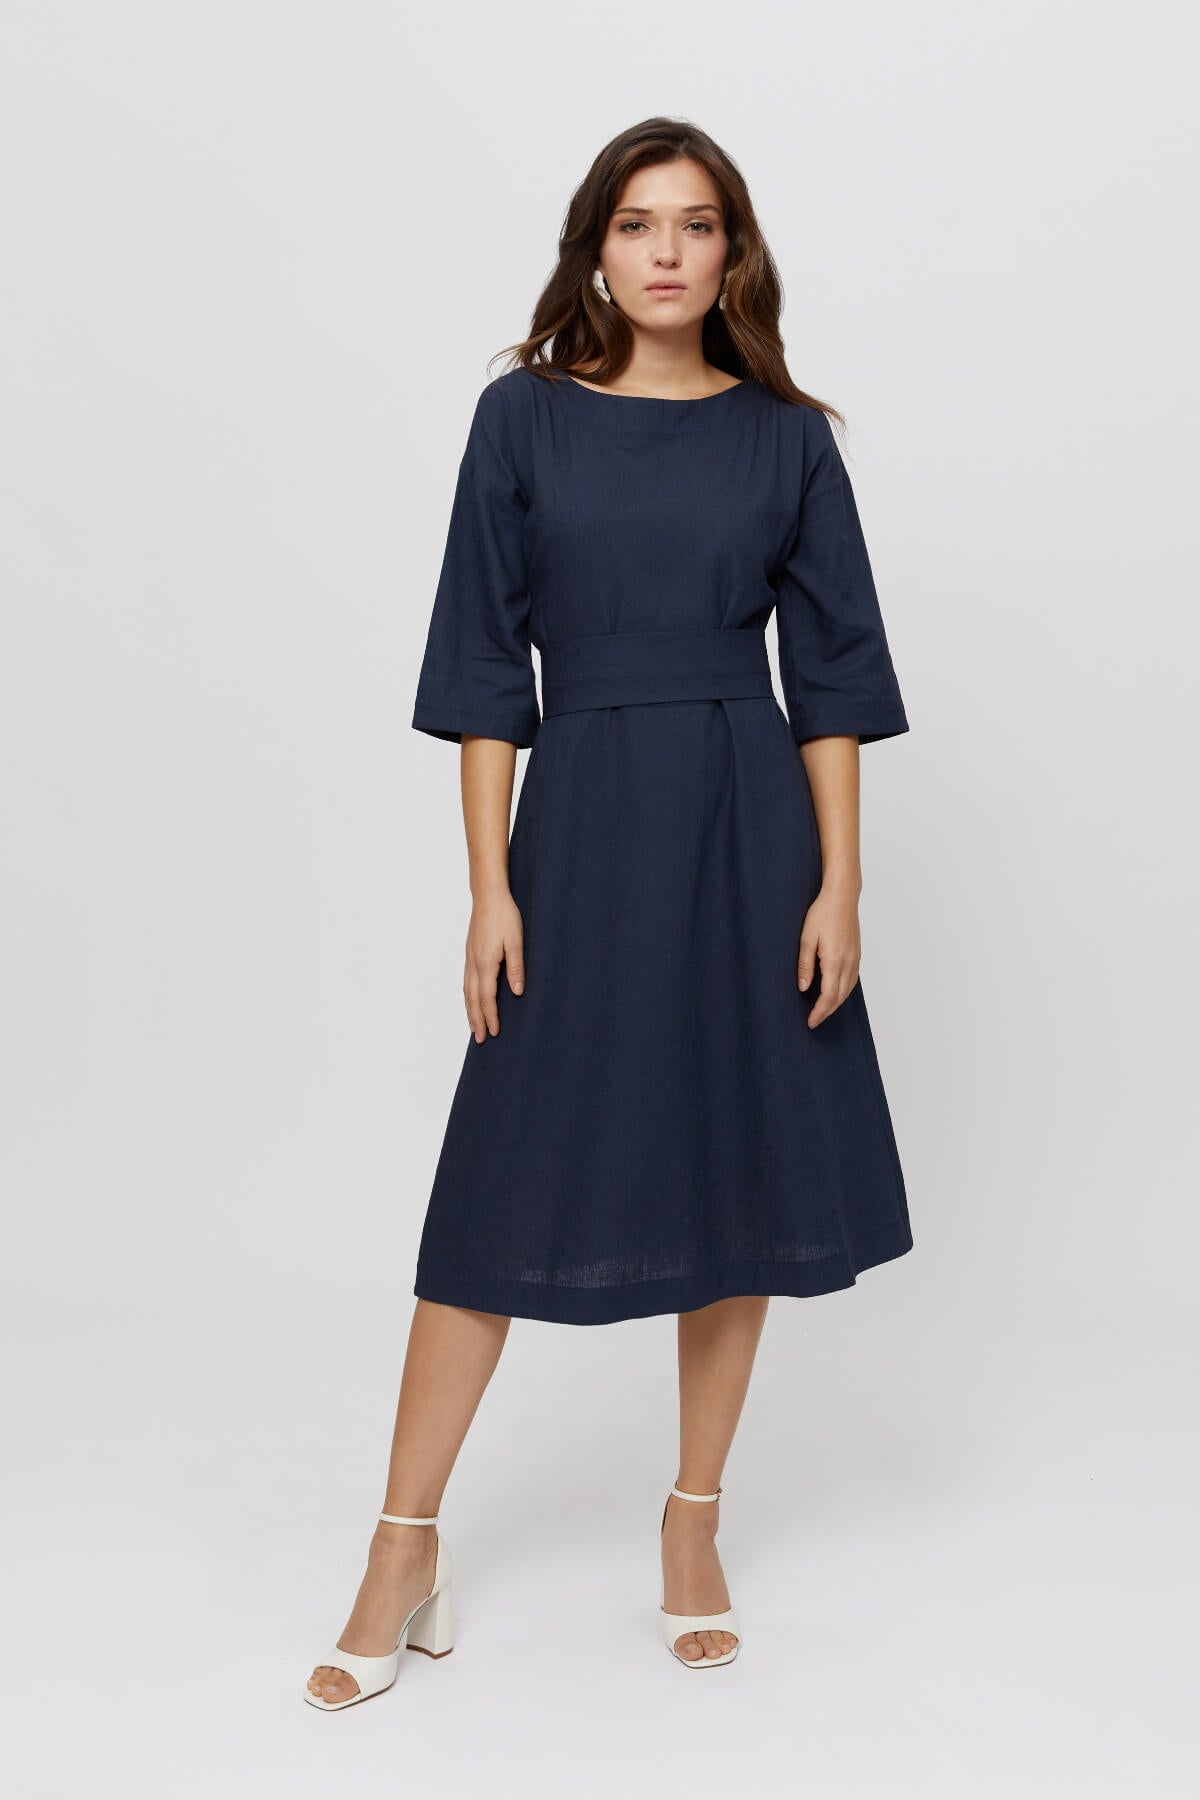 Schwarzes elegantes Cocktailkleid MANE · Festliches midi Sommerkleid 2024 · Kleid aus Leinen · Elegantes blaues Leinenkleid - AYANI